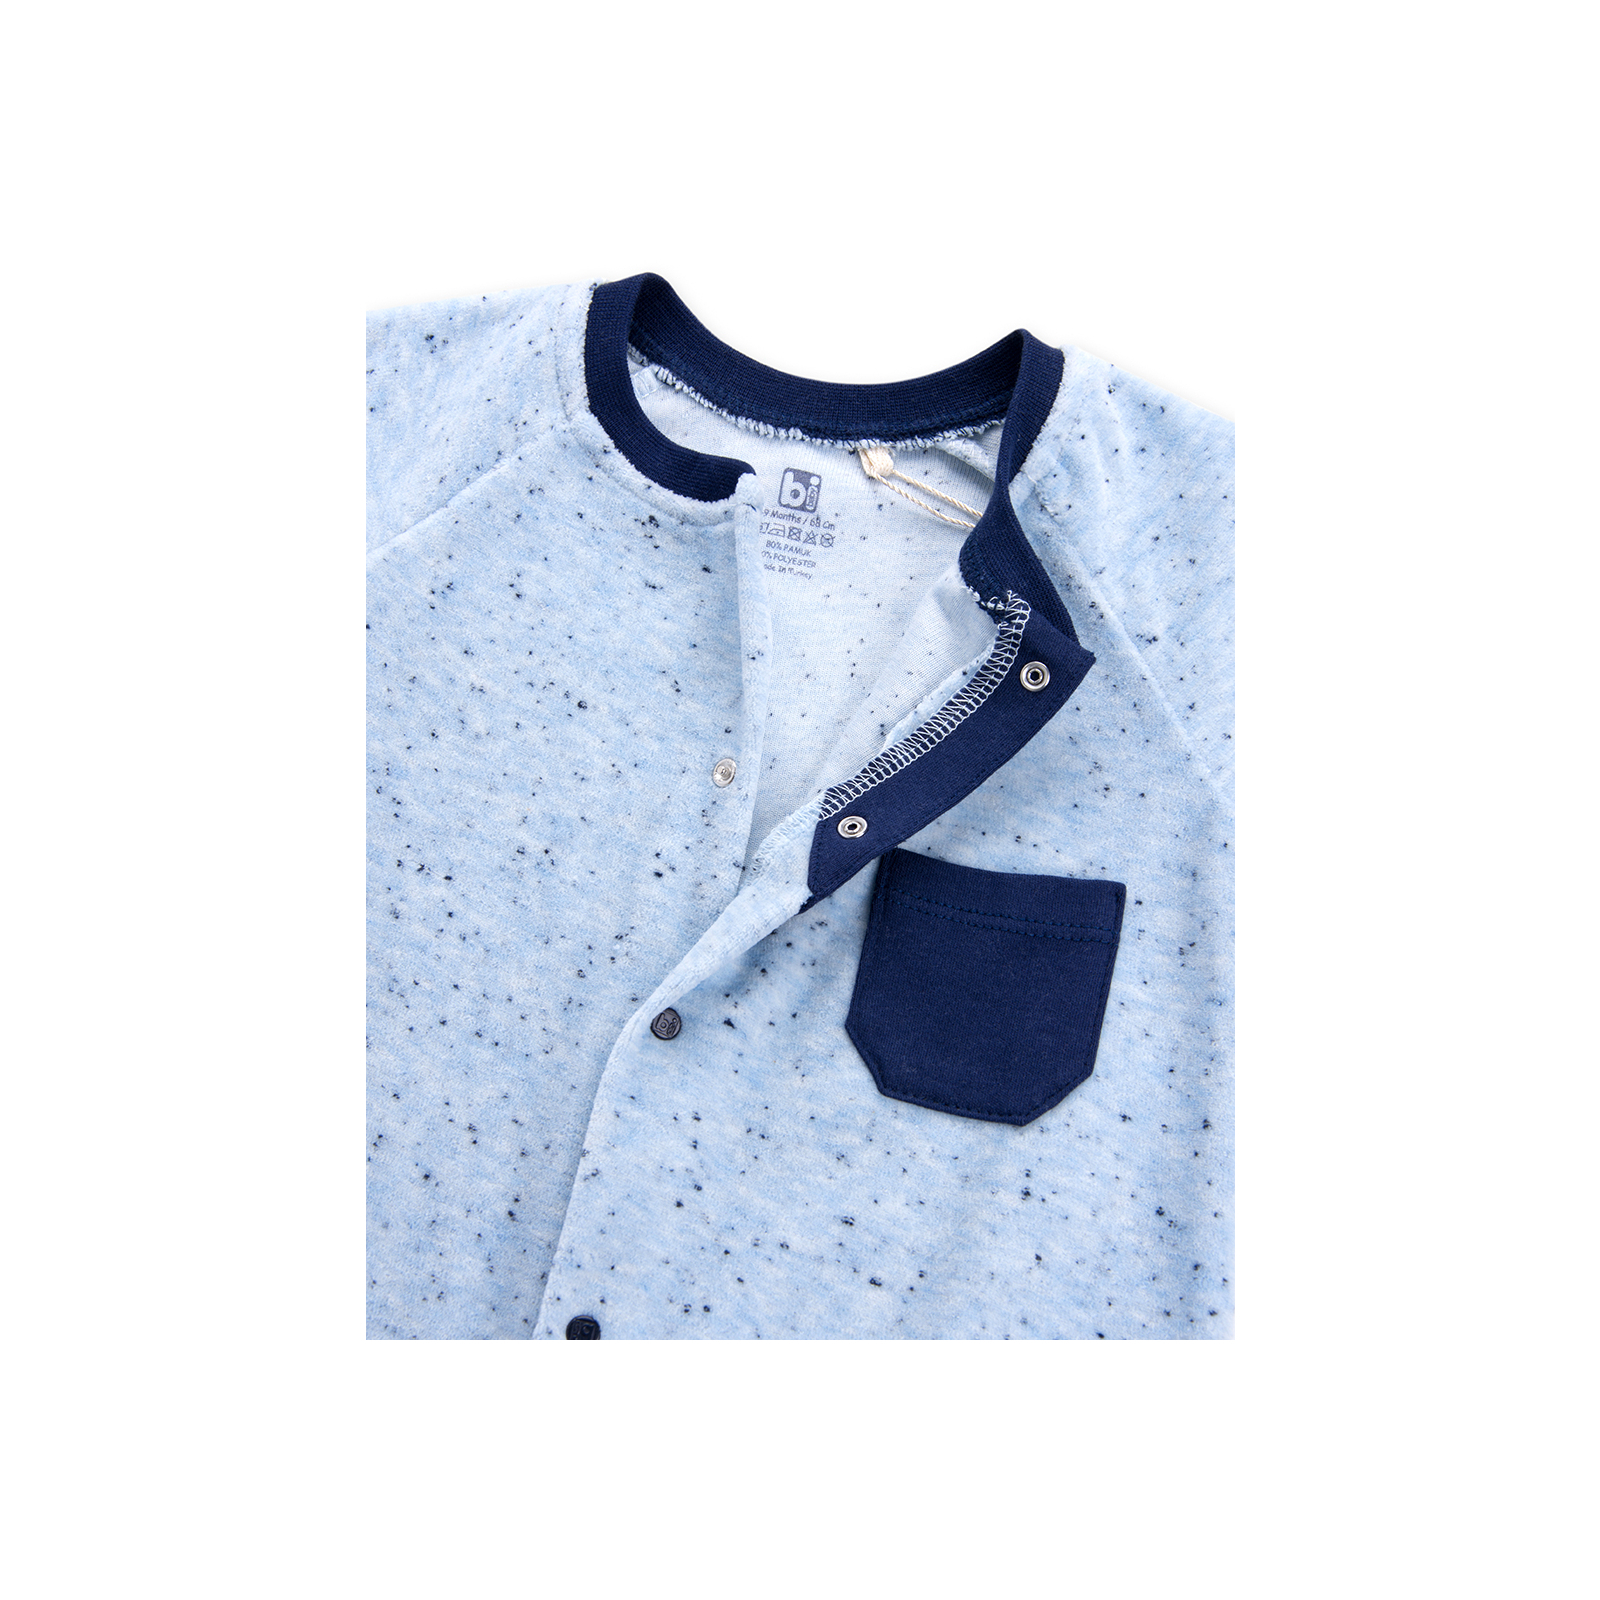 Человечек Bibaby велюровый с карманчиком "London" (60169-68B-blue) изображение 4